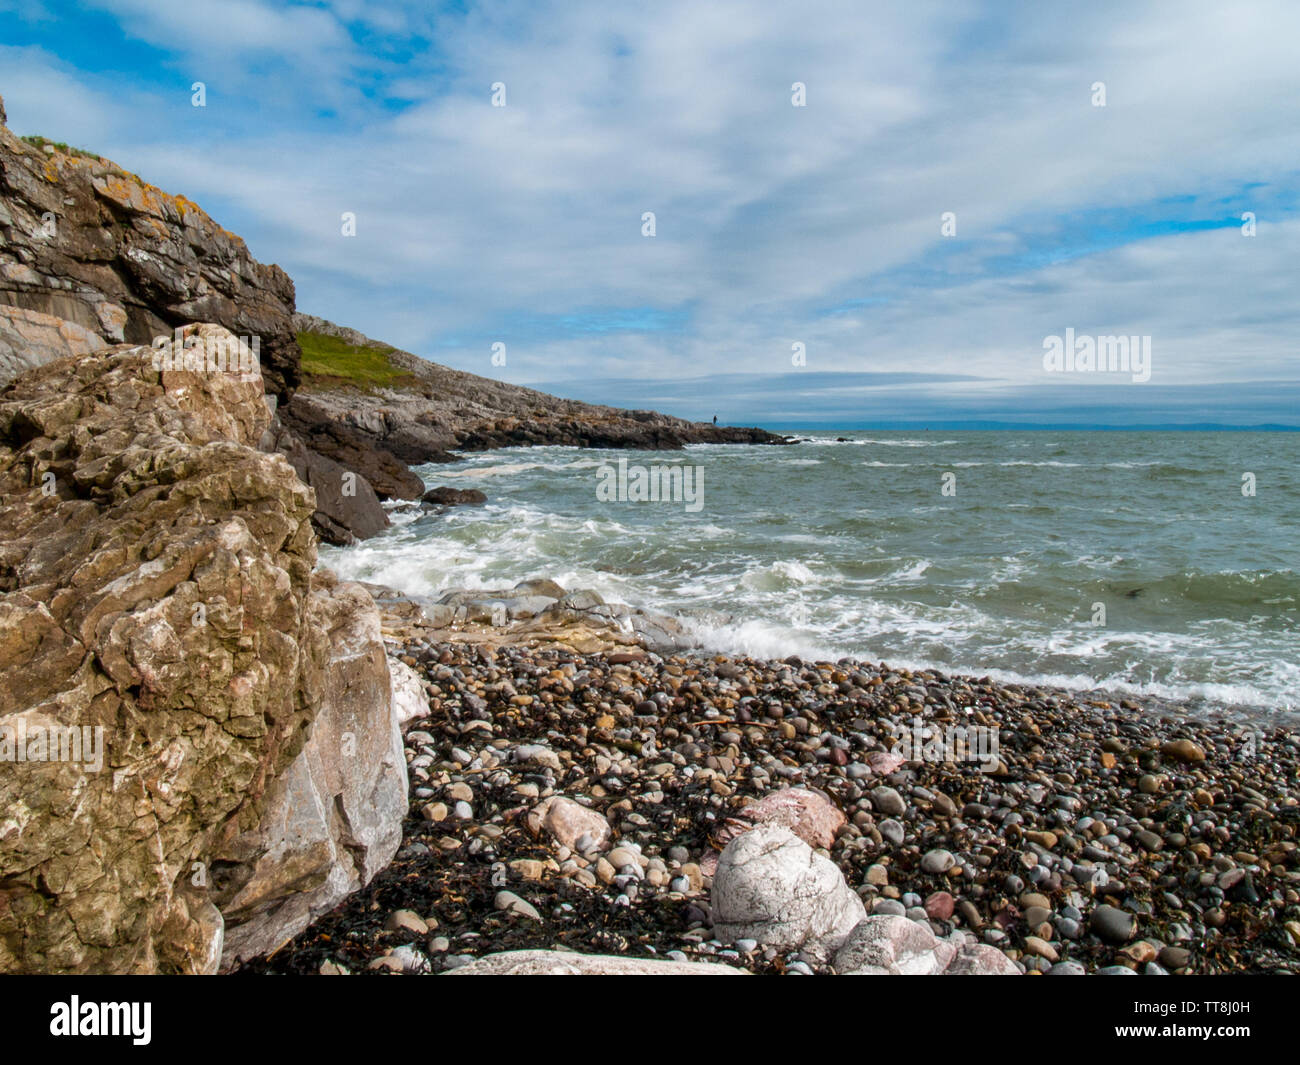 Face à la mer à Limeslade Bay, un pêcheur peut être vu la pêche sur les rochers au loin. Gower, Swansea, Pays de Galles, Royaume-Uni. Banque D'Images